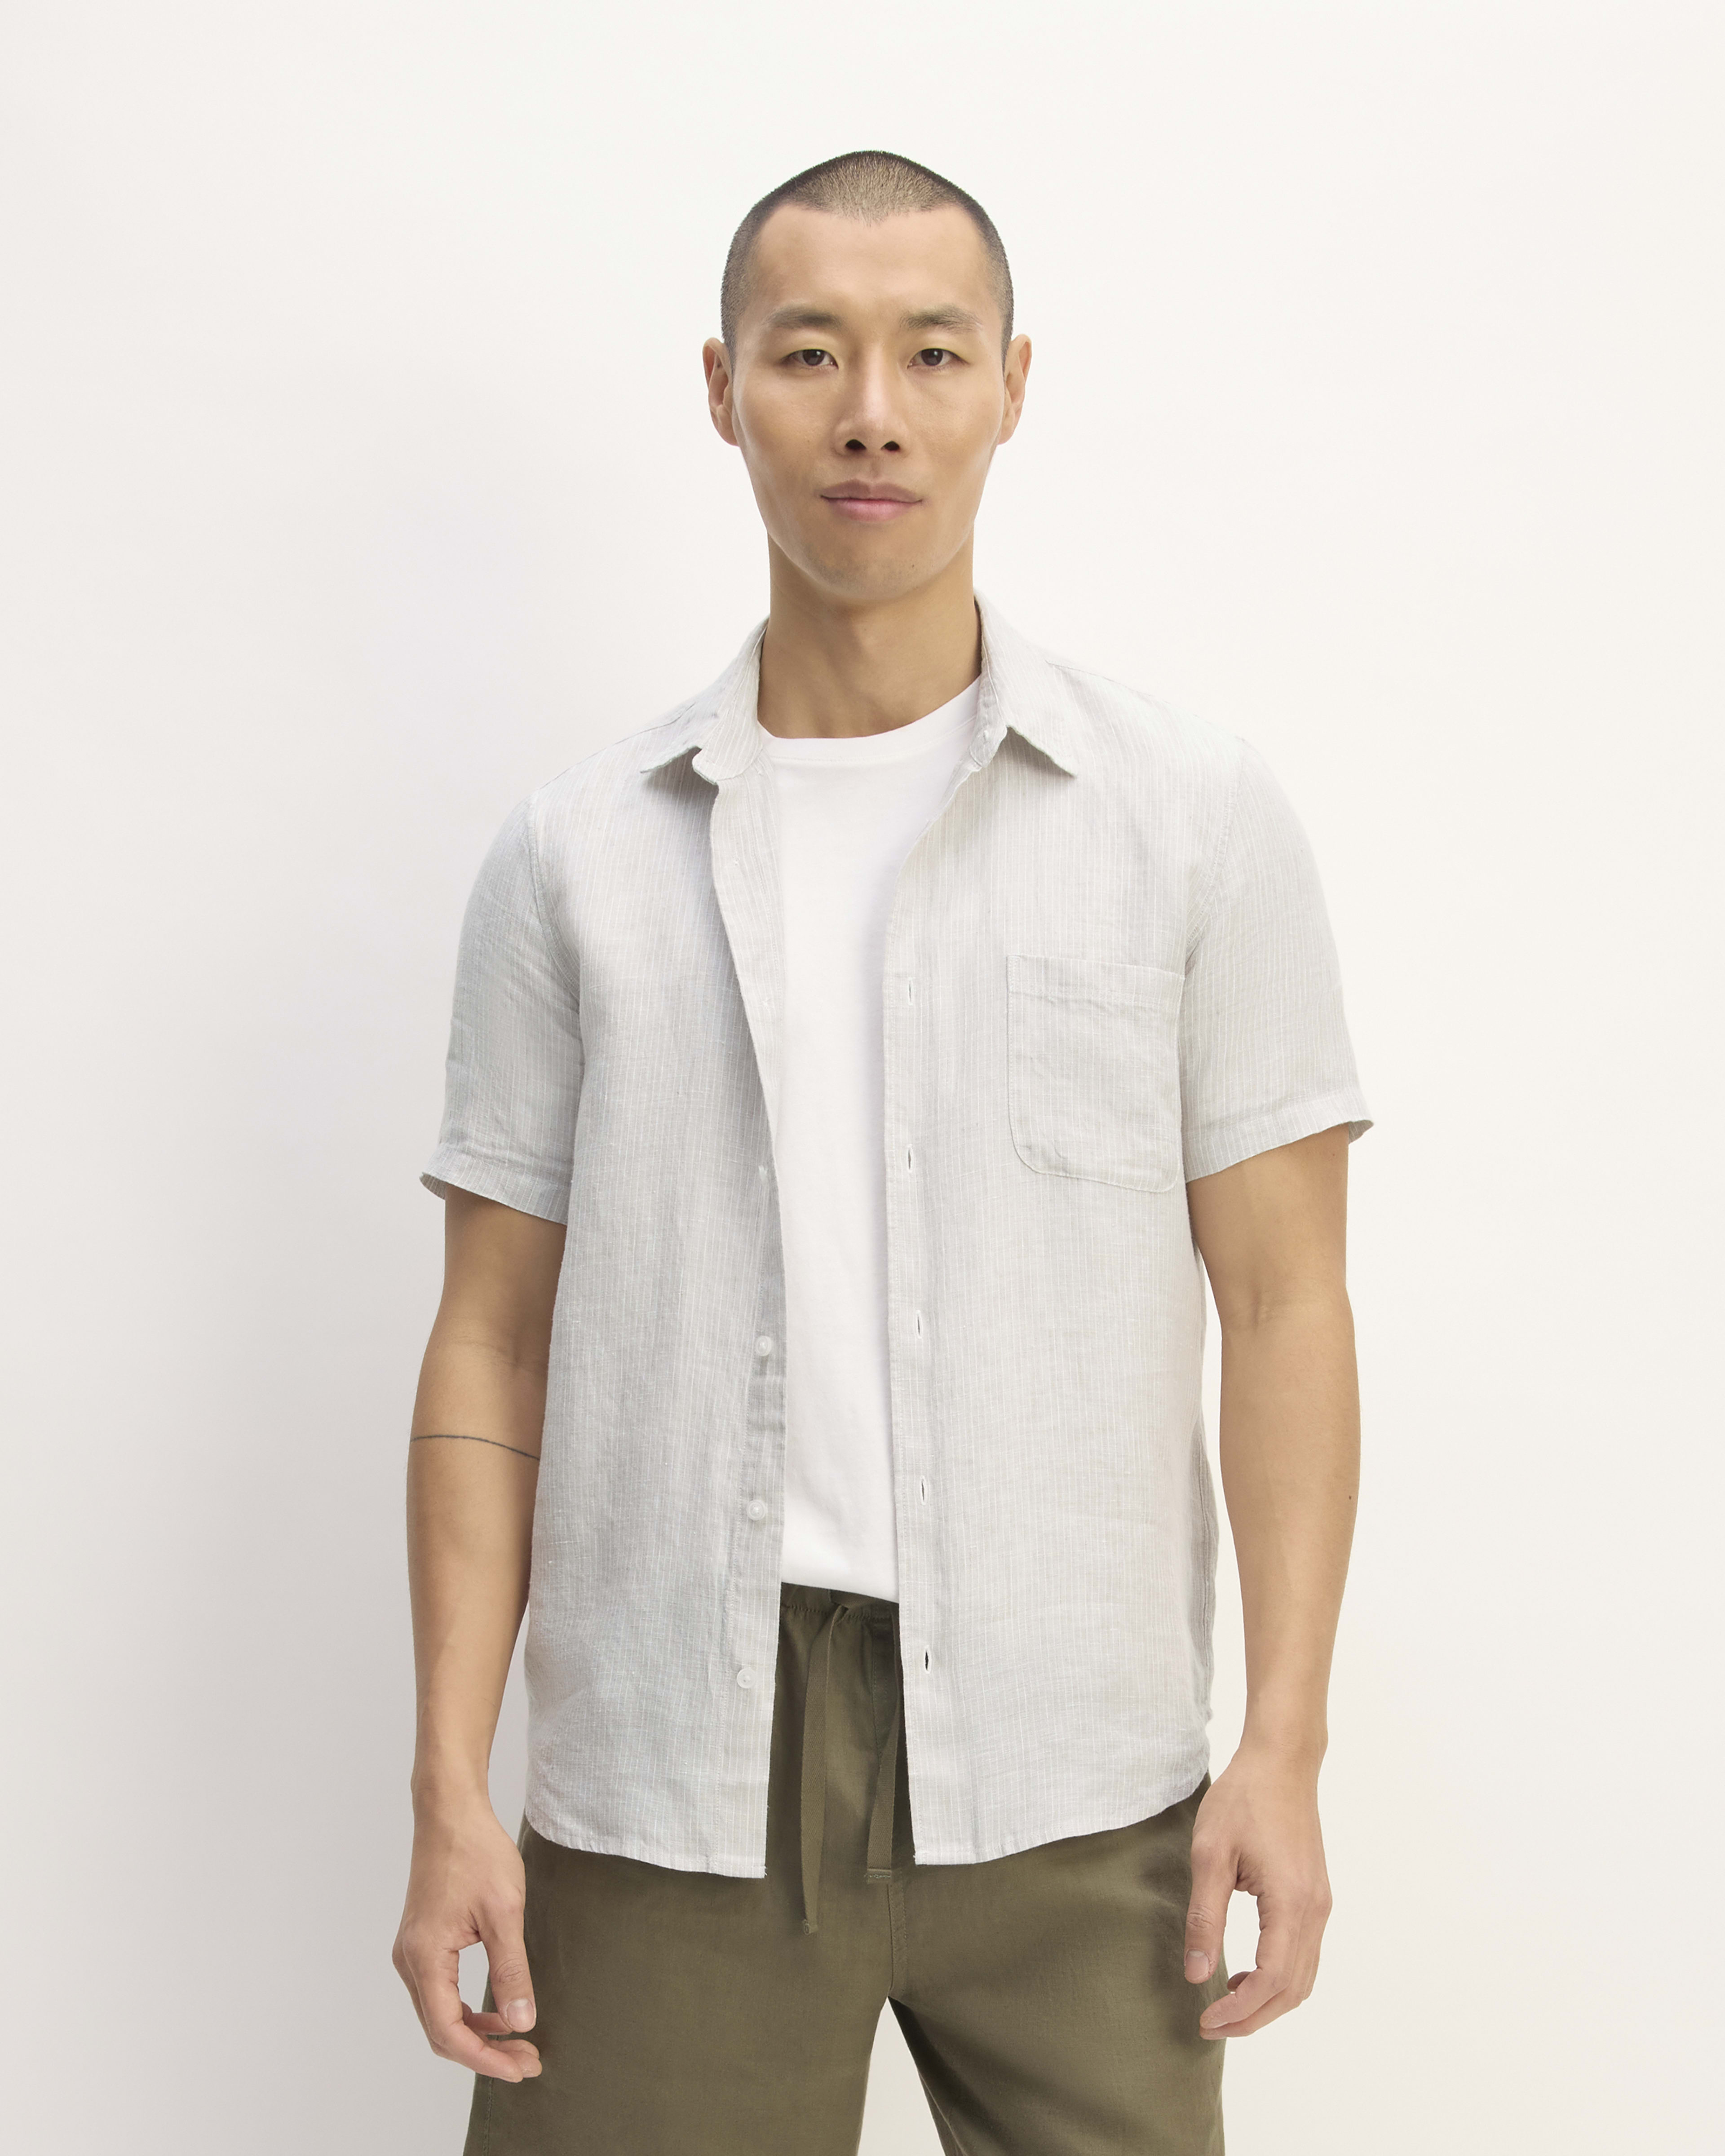 Men's Dress Shirts & Button Downs – Everlane